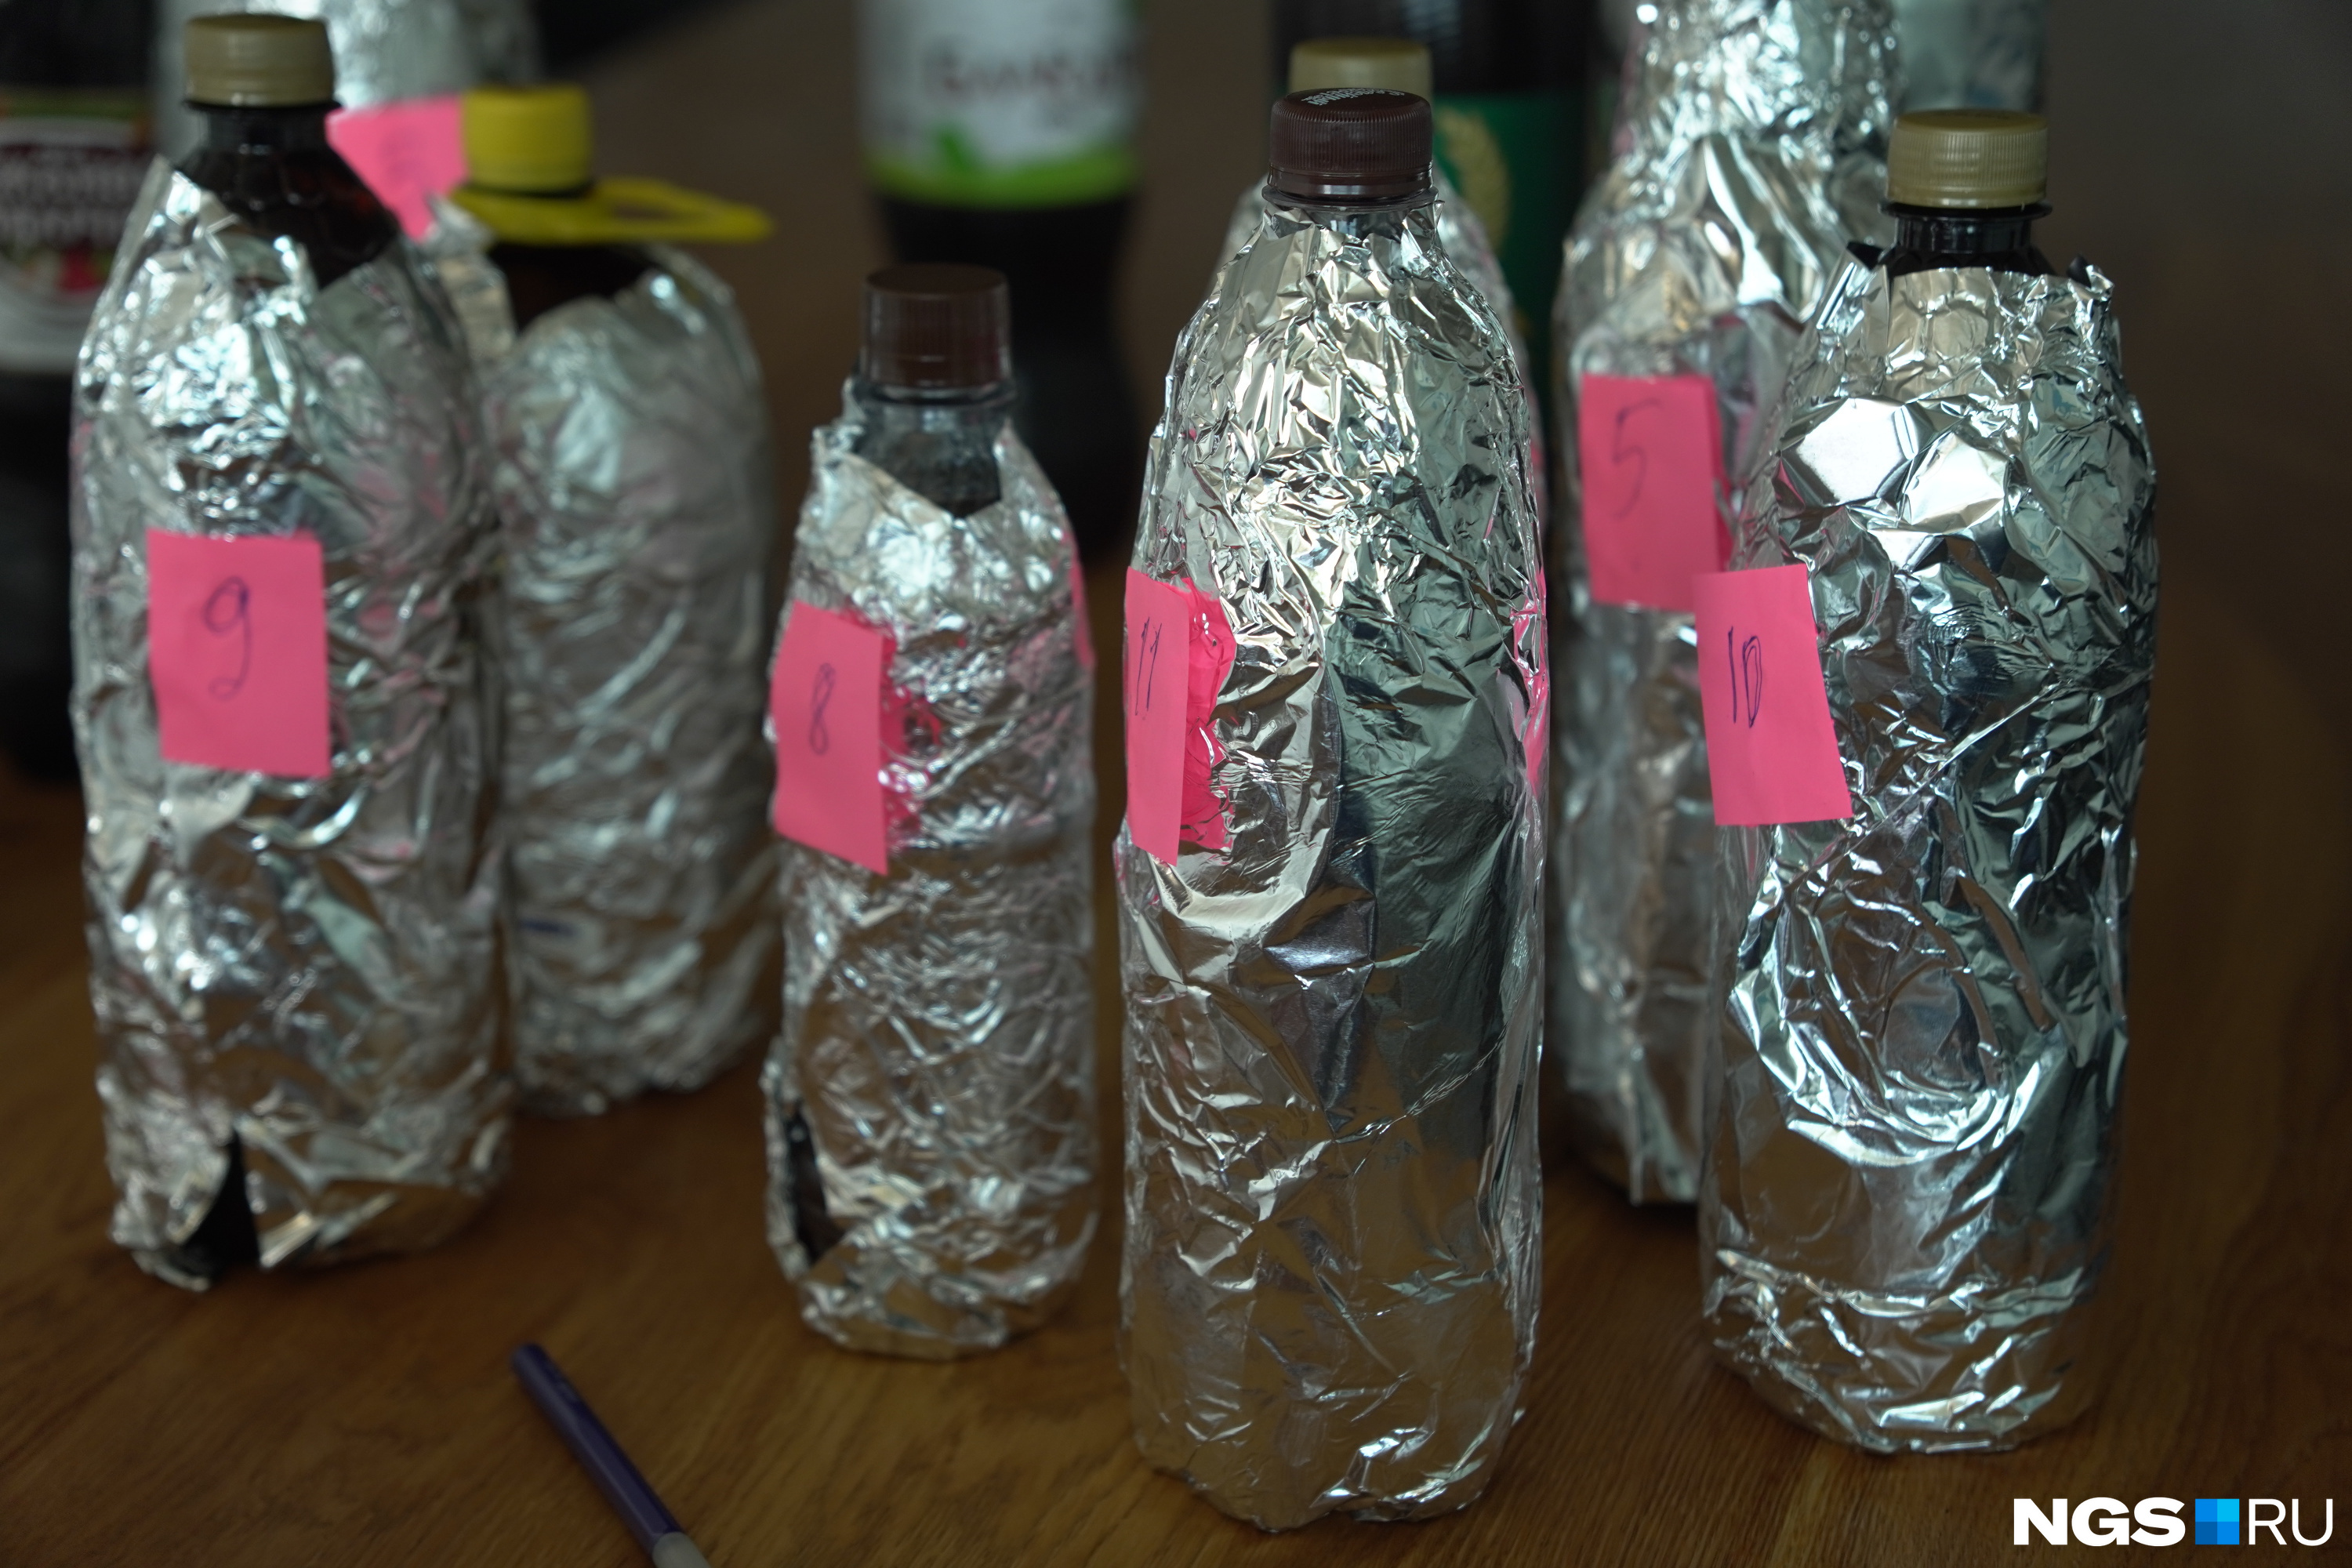 Во время дегустации все бутылки традиционно заматываются фольгой, чтобы участники ориентировались только на свой вкус